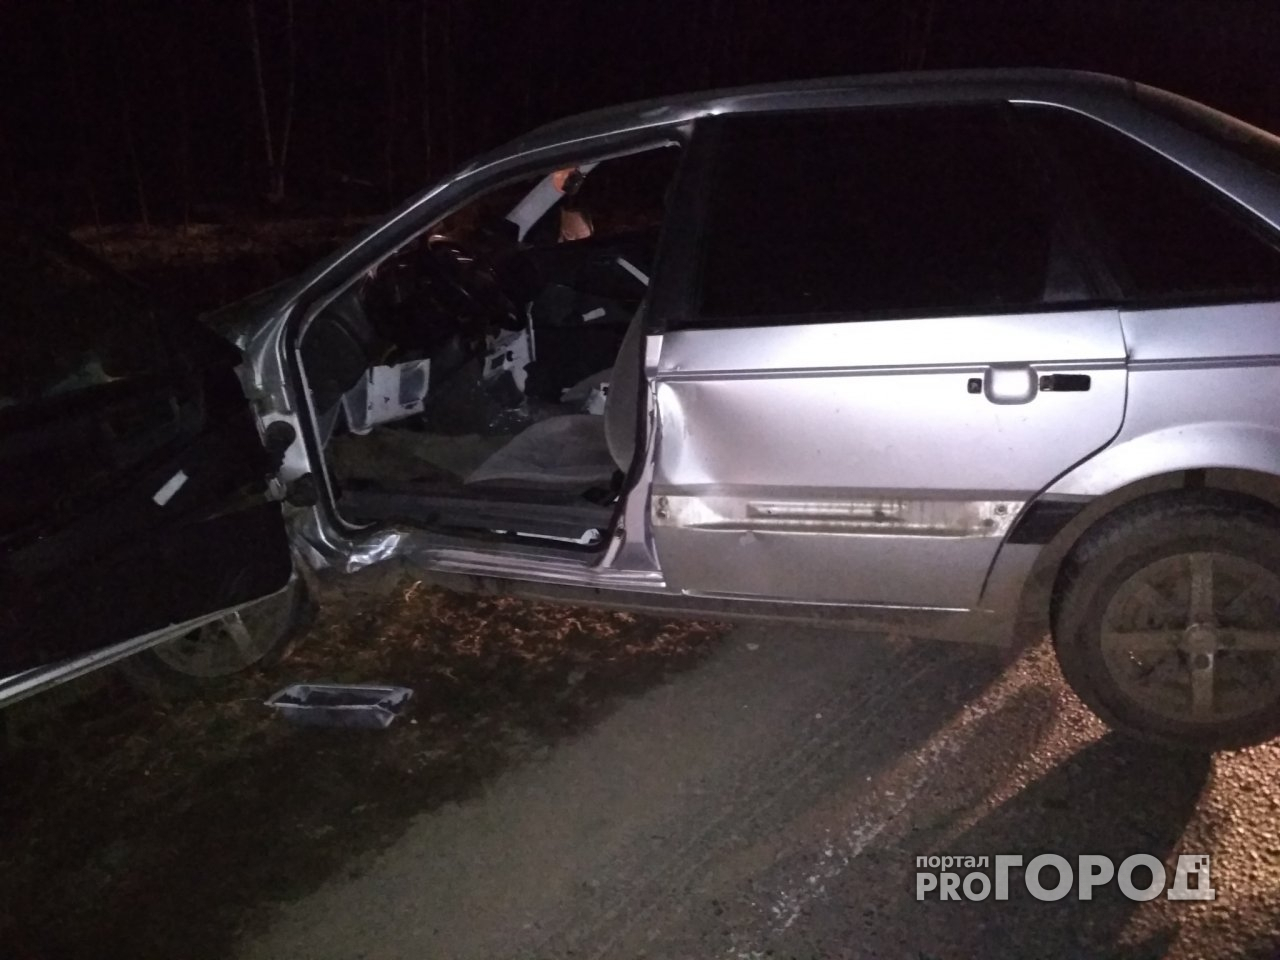 Появились фото с места ДТП в Кировской области, где погибли пятеро человек